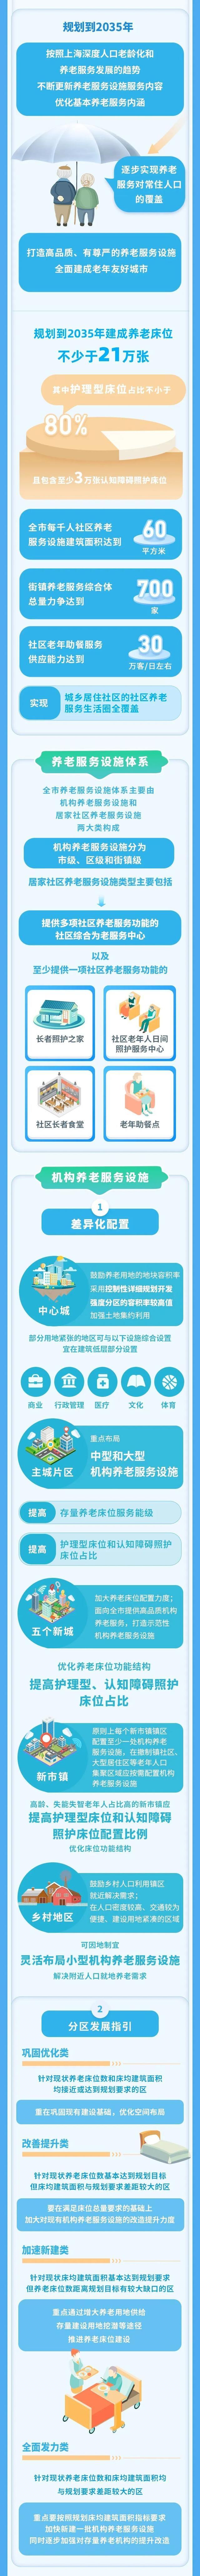 一图读懂《上海市养老服务设施布局专项规划（2022-2035年）》